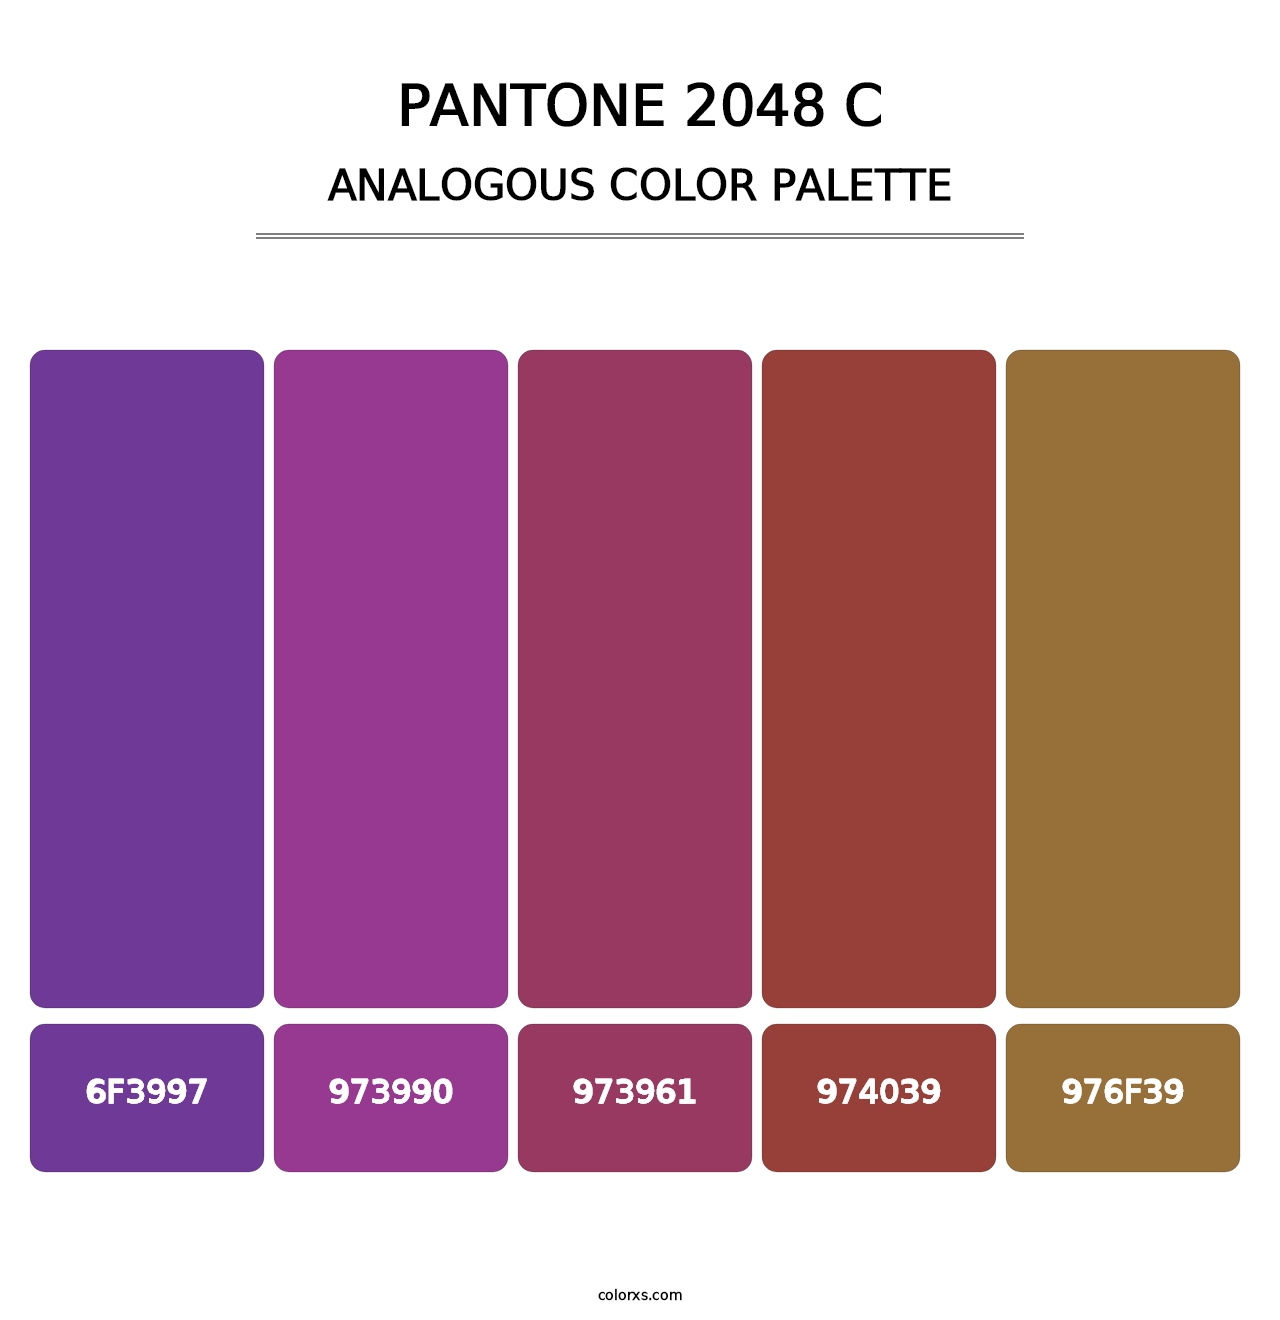 PANTONE 2048 C - Analogous Color Palette